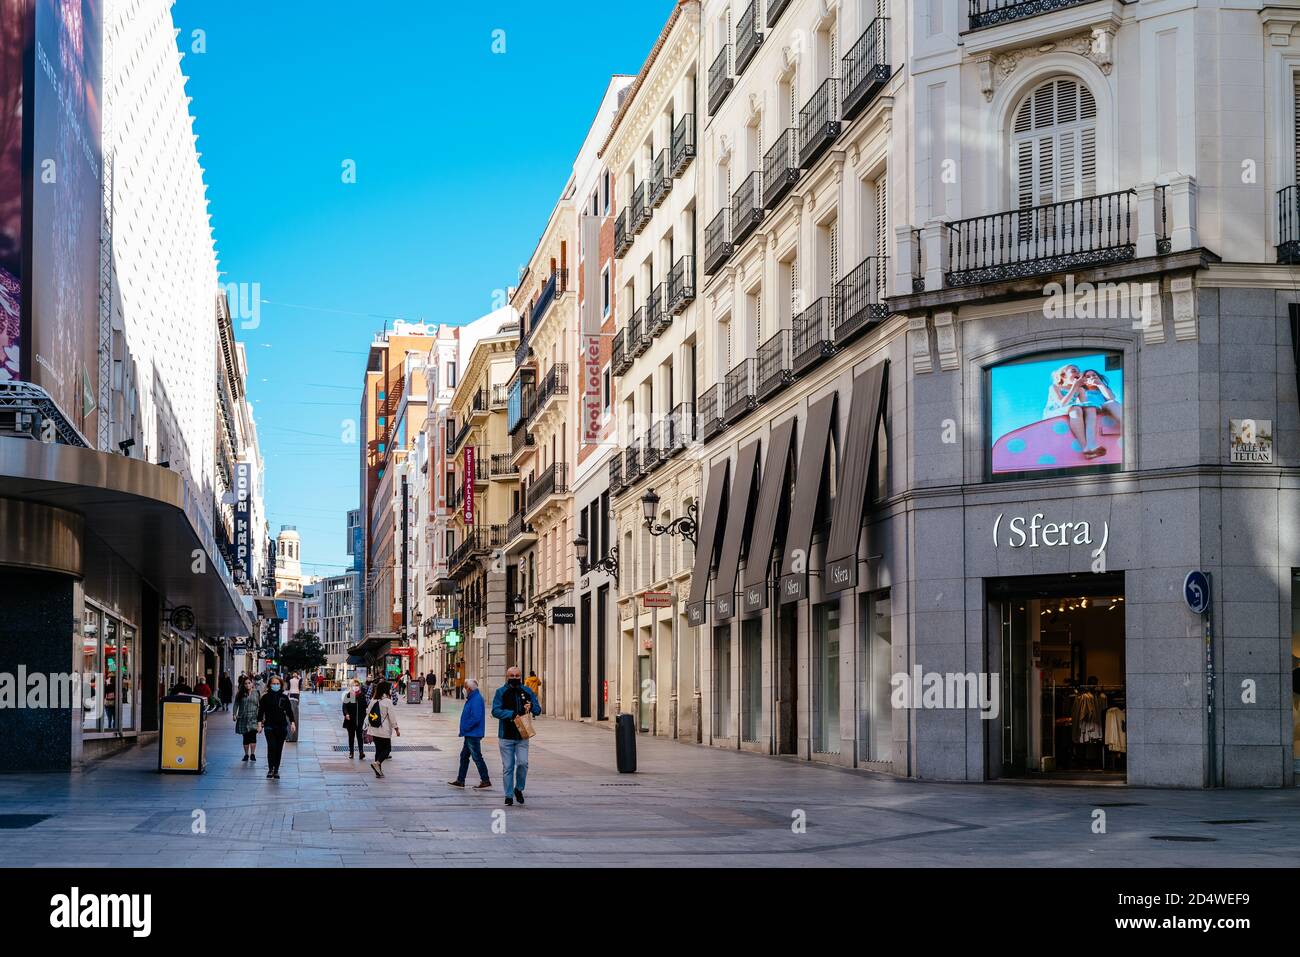 Madrid, Spagna - 3 ottobre 2020: Vista di Preciados Street durante il confino covid-19. E' una delle vie dello shopping piu' famose di Madrid. Foto Stock